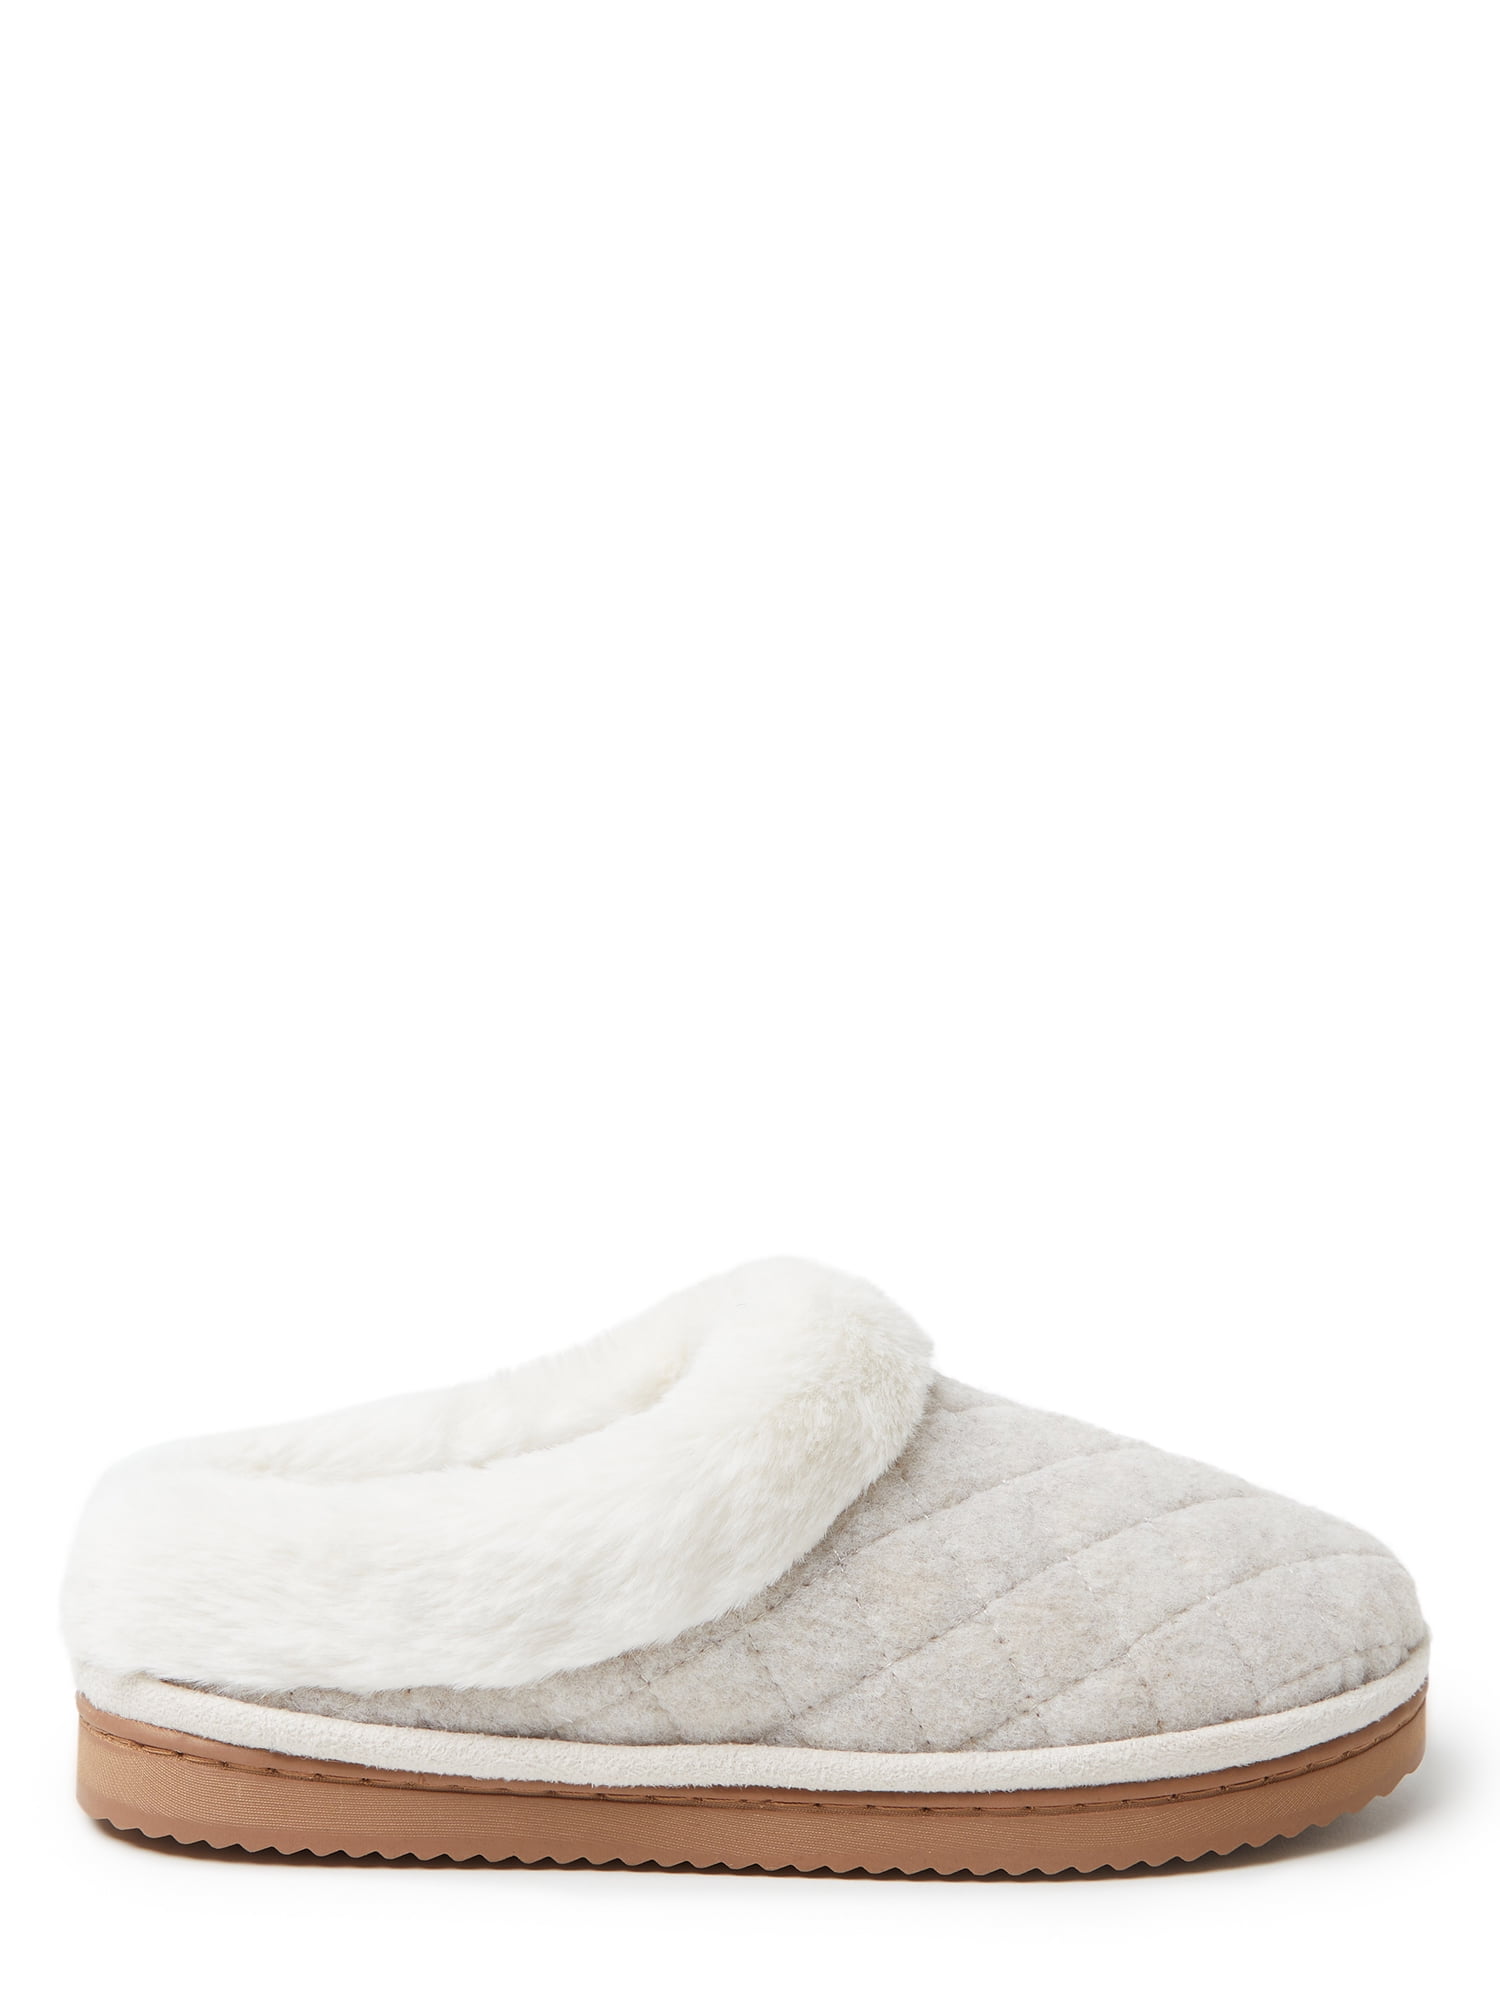 Dearfoams Cozy Comfort  Wool Inspired Scuff Slippers (Women's)